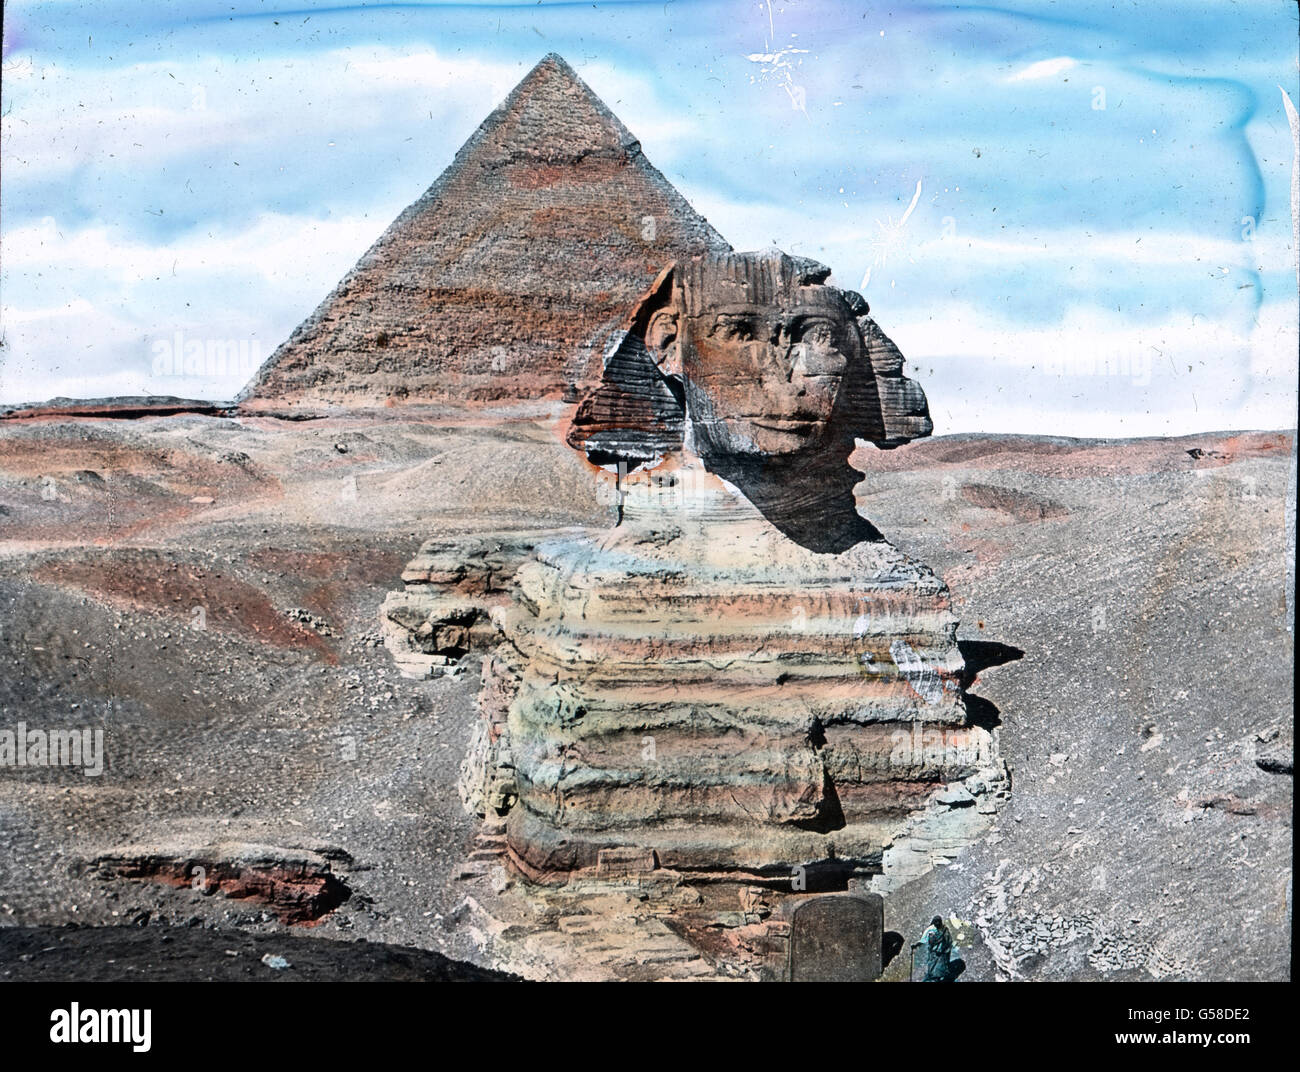 In die Zeit des Pharao Chefren um 2800 v. Chr. Verlegt man auch die Entstehung dieses rätselhaften Bildwerkes. Es ist der Sphinx, der aus dem Felsen gehauene riesenhafte ruhende Löwe mit dem Menschenantlitz, dem Symbol der göttlichen Herrschermacht der Pharaonen, weshalb Sphinxe anderswo öfter das Antlitz des Königs tragen. Diesen Sphinx umfächelte der Wüstenwind mit gelbbraunen Armen hielt ihn der Wüstensand umschlungen, aber trutzig lag er da mit seinem Haupt, das schon den Kanonenkugeln als Zielscheibe gedient hatte. So war das Bild, das der Sphinx mit der dahinter stehenden Pyramide noch v Stock Photo